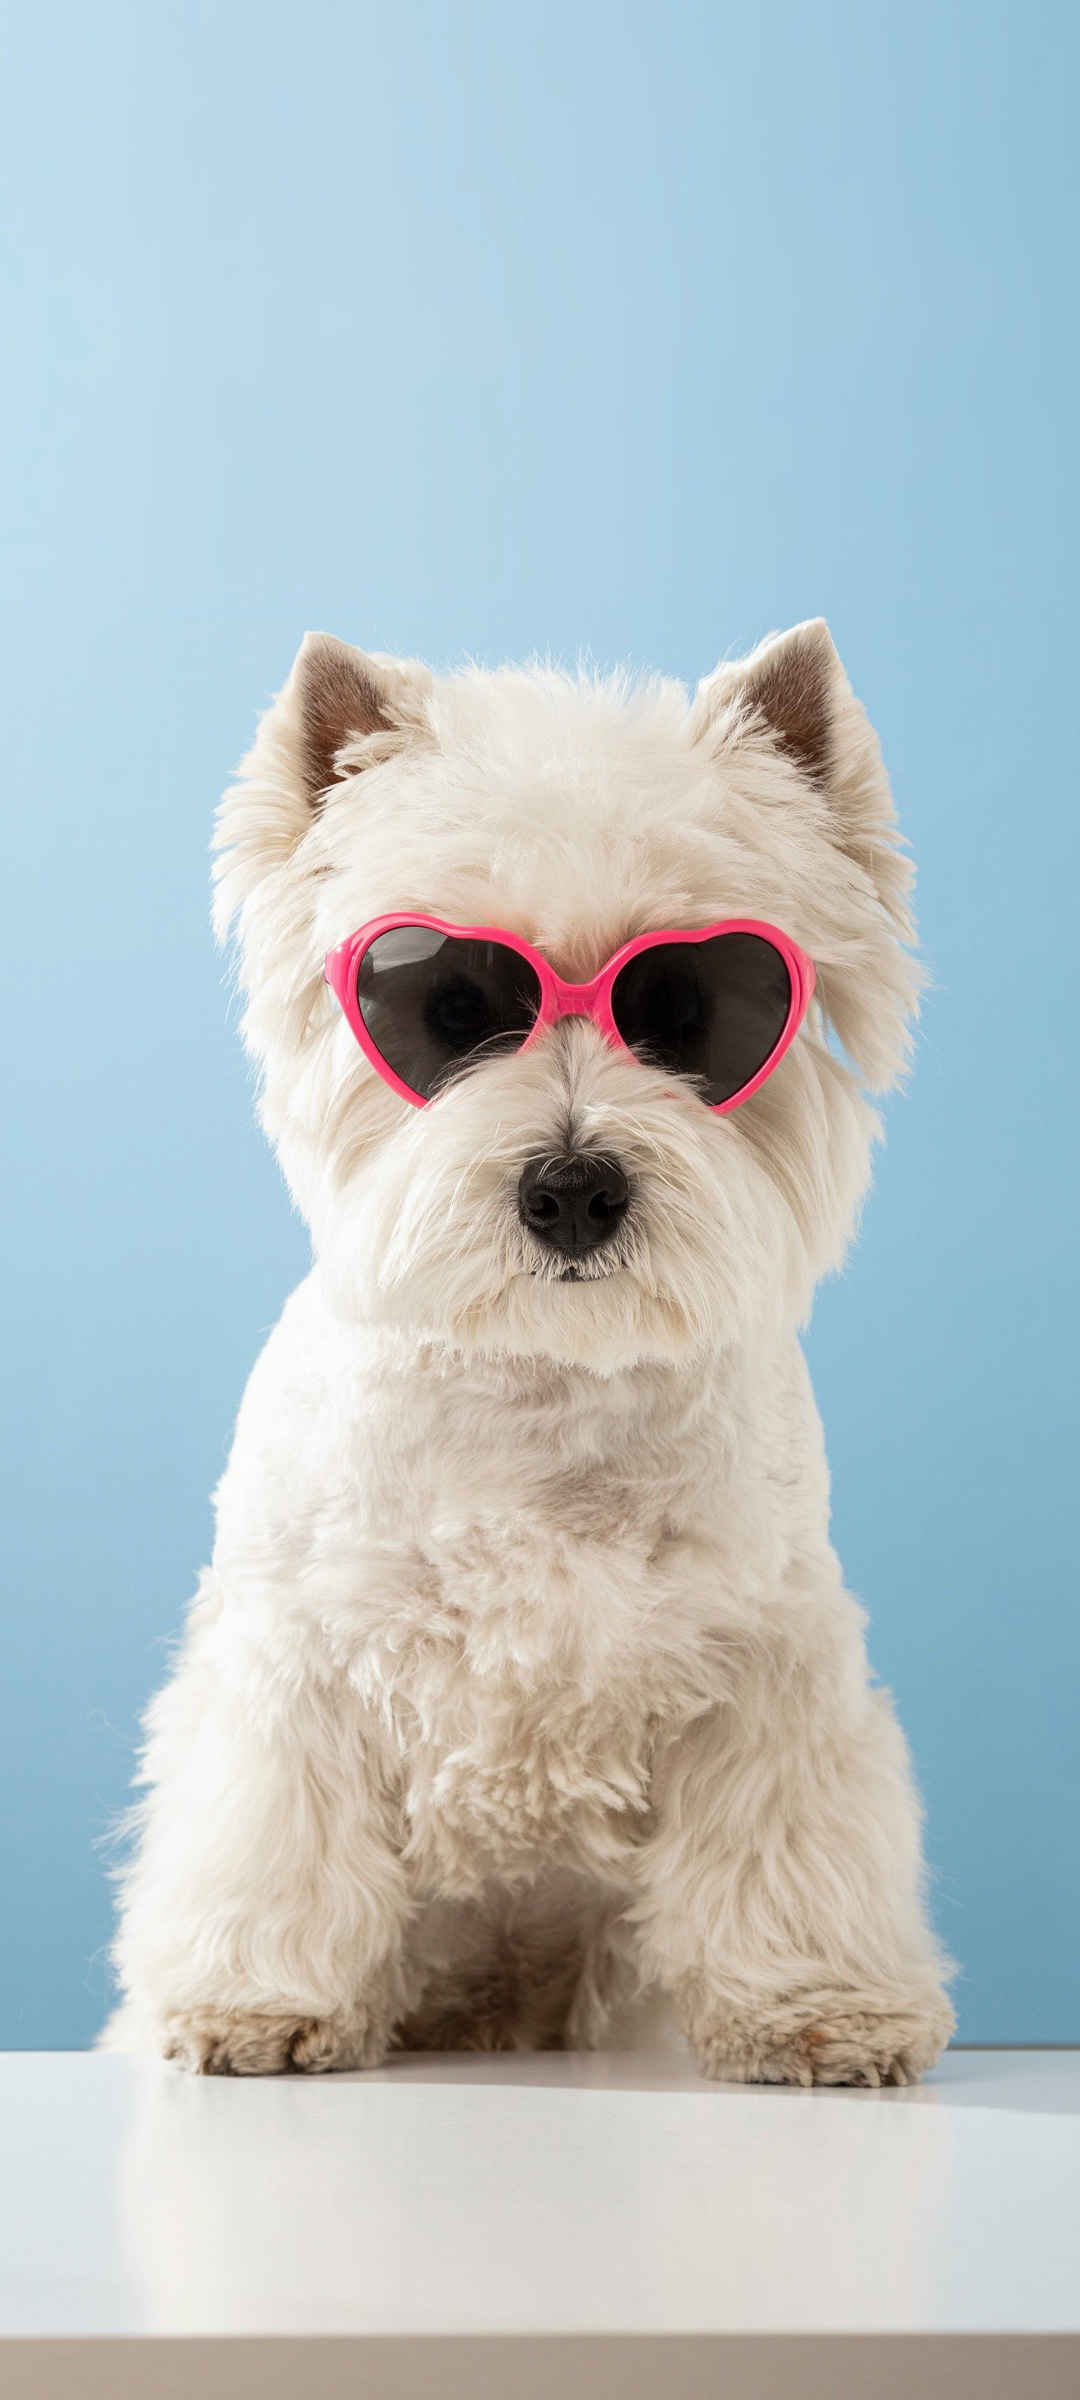 酷狗眼镜动物壁纸图片大全可爱-